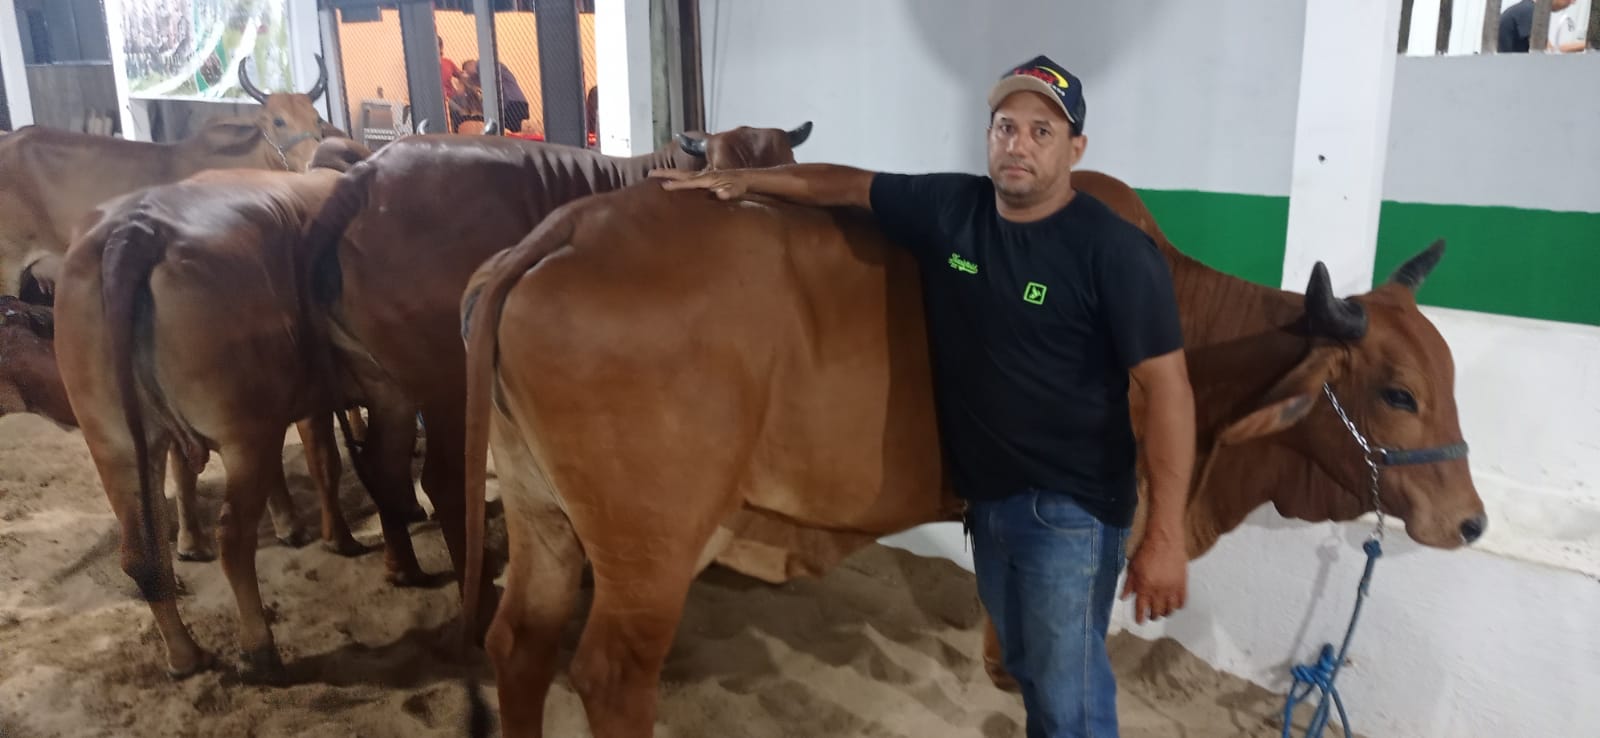 Feira no Acre enaltece o melhor da pecuária de Rondônia: Vaca de meia tonelada chama atenção - News Rondônia